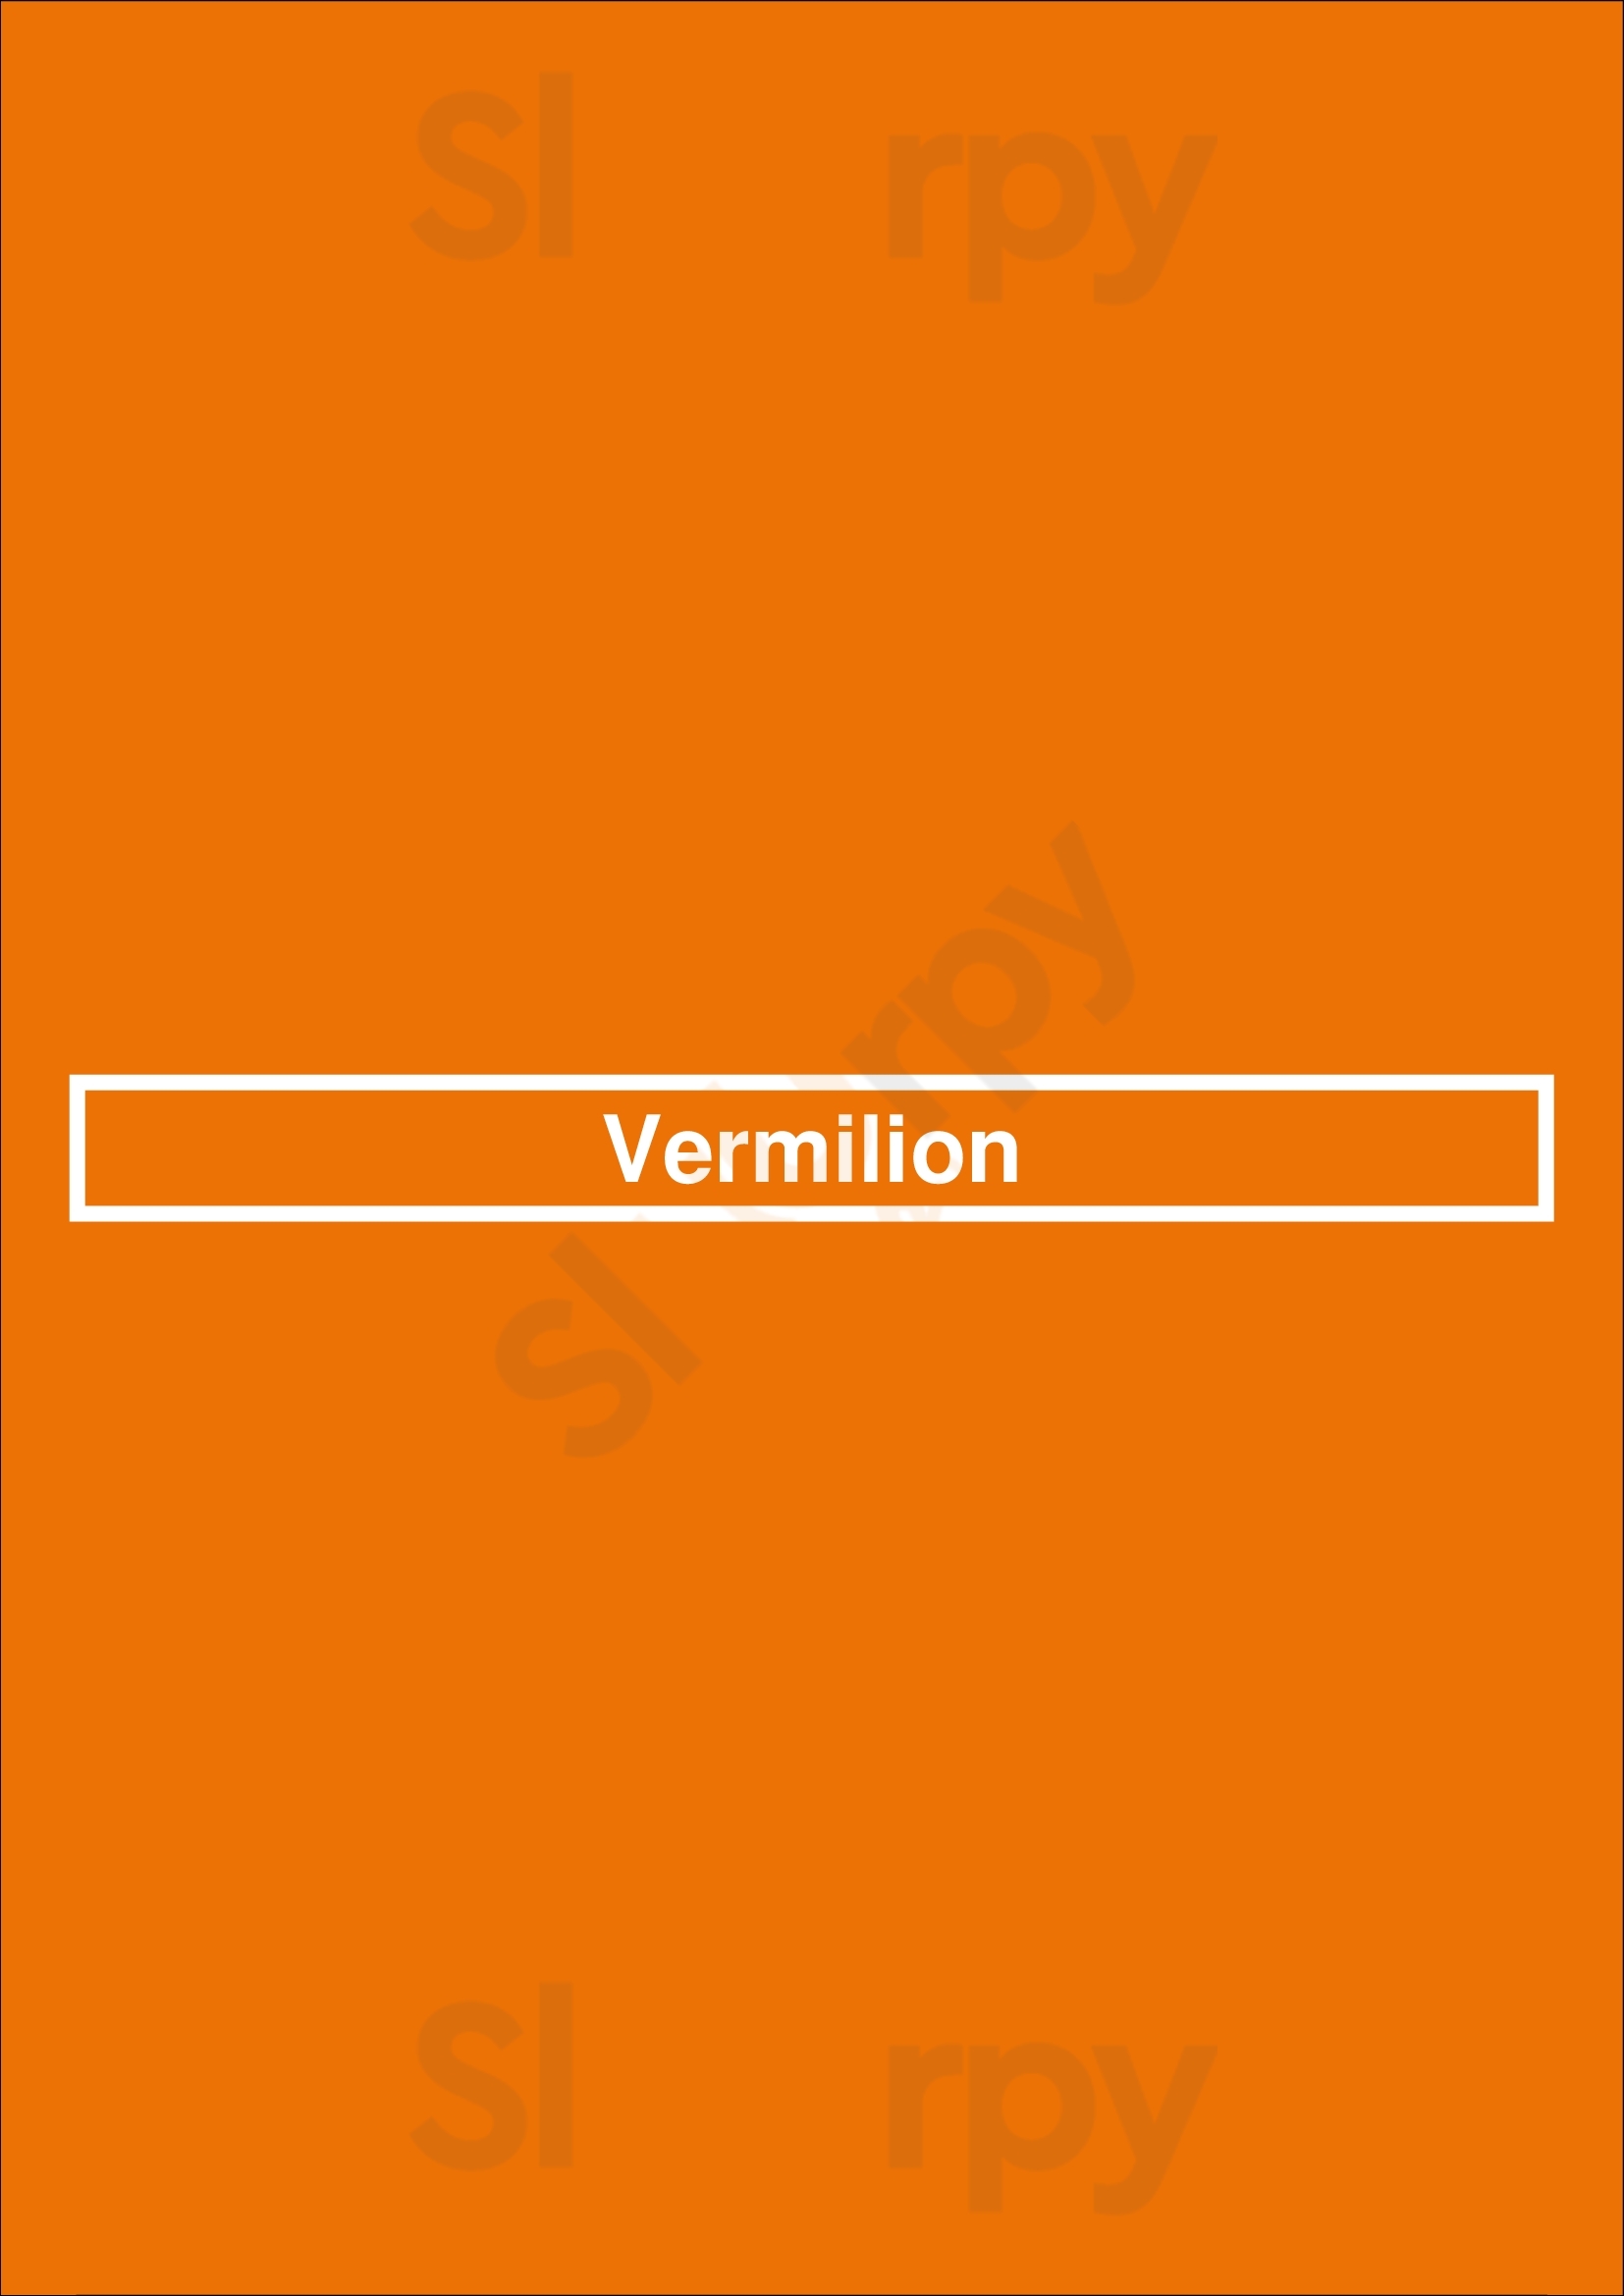 Vermilion Dublin Menu - 1